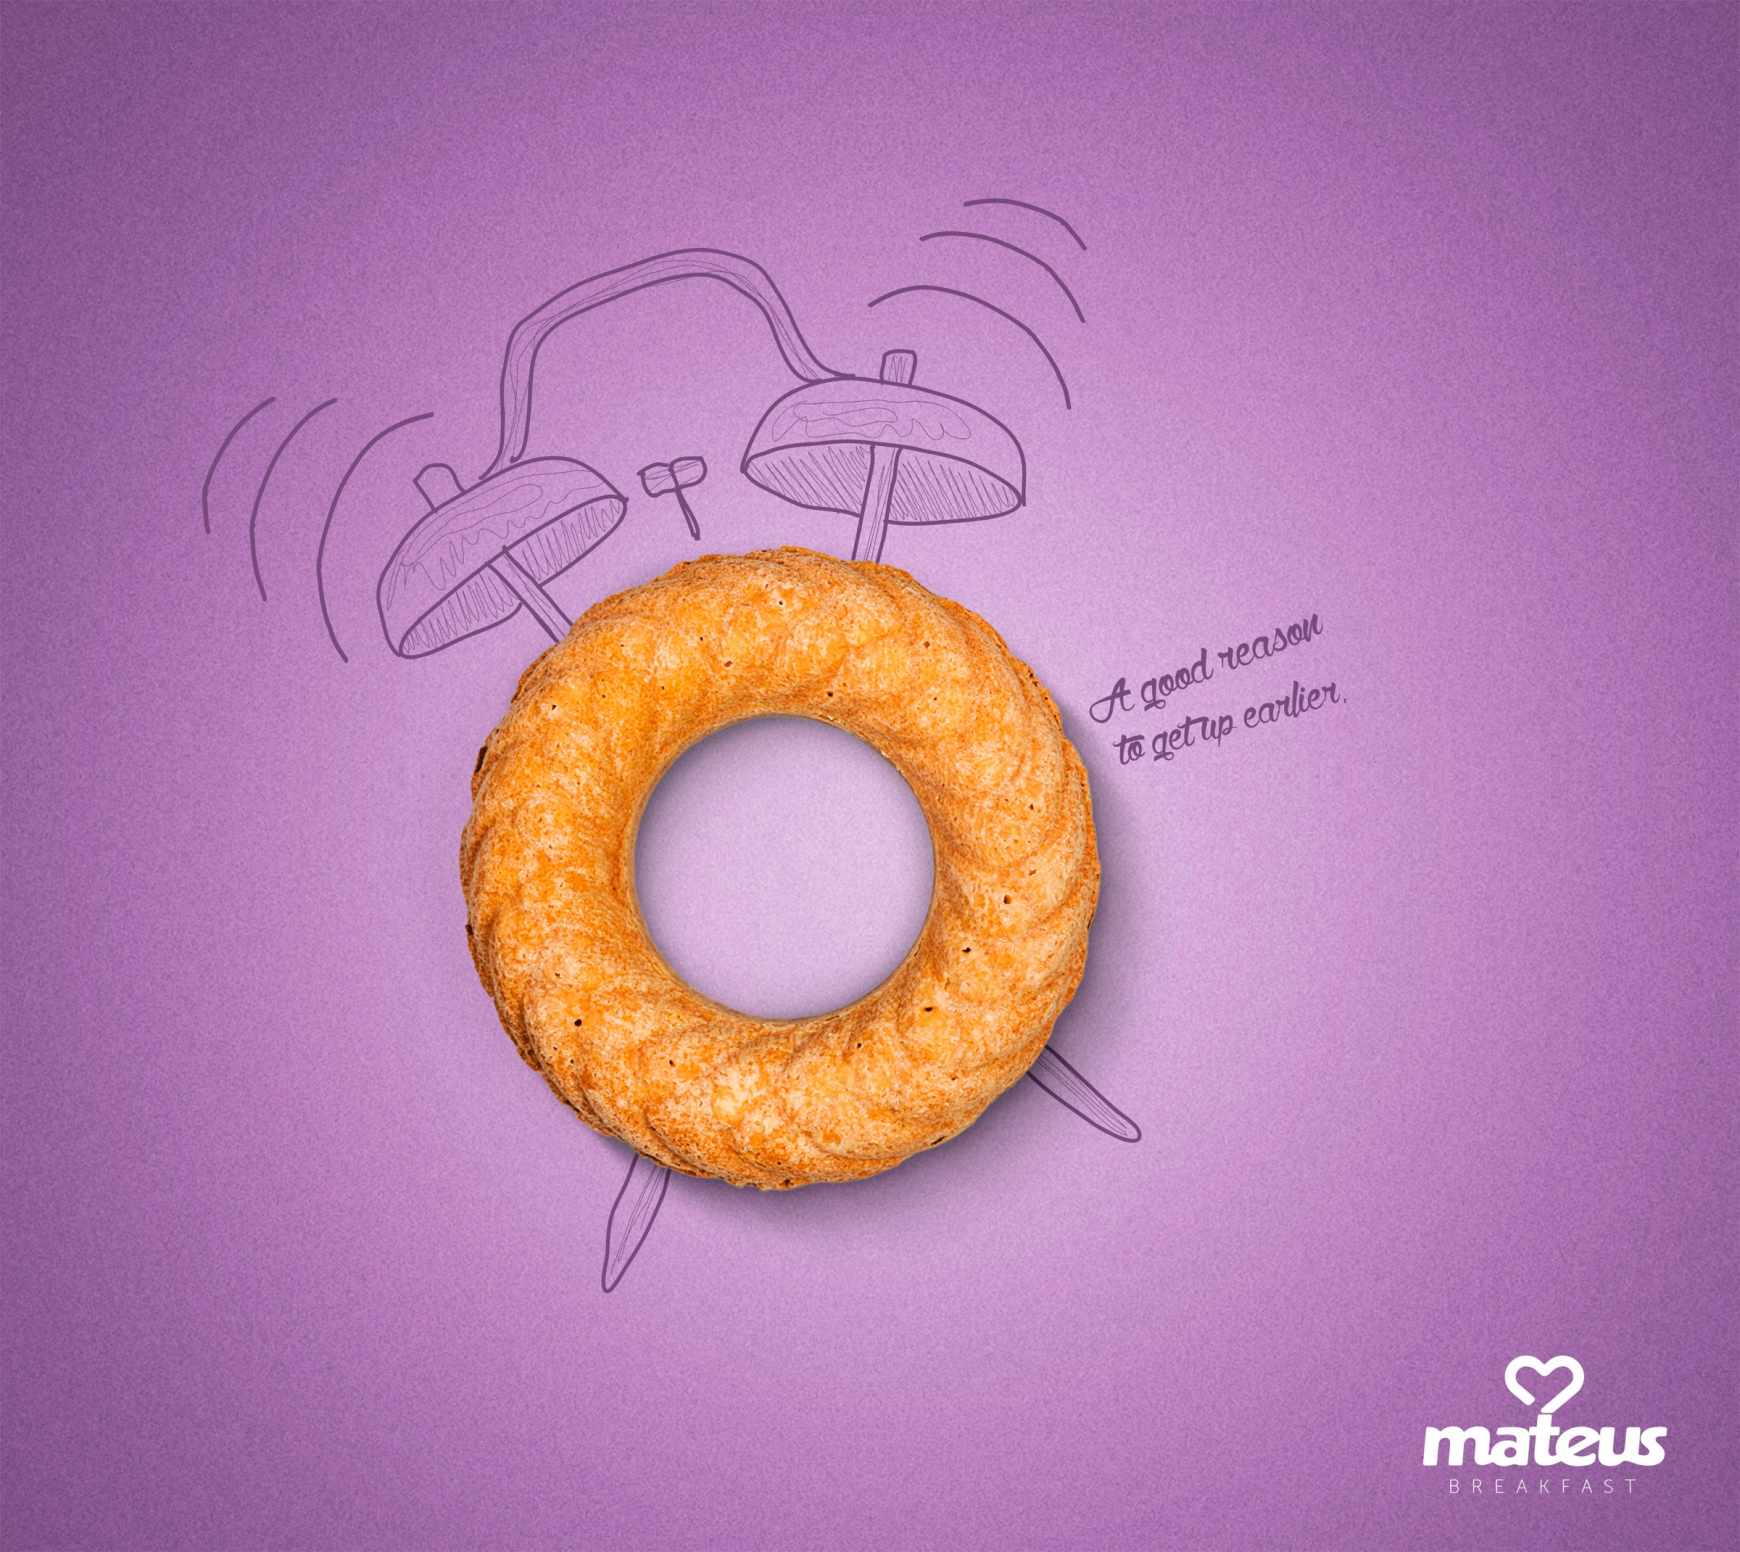 巴西Mateus平面广告设计